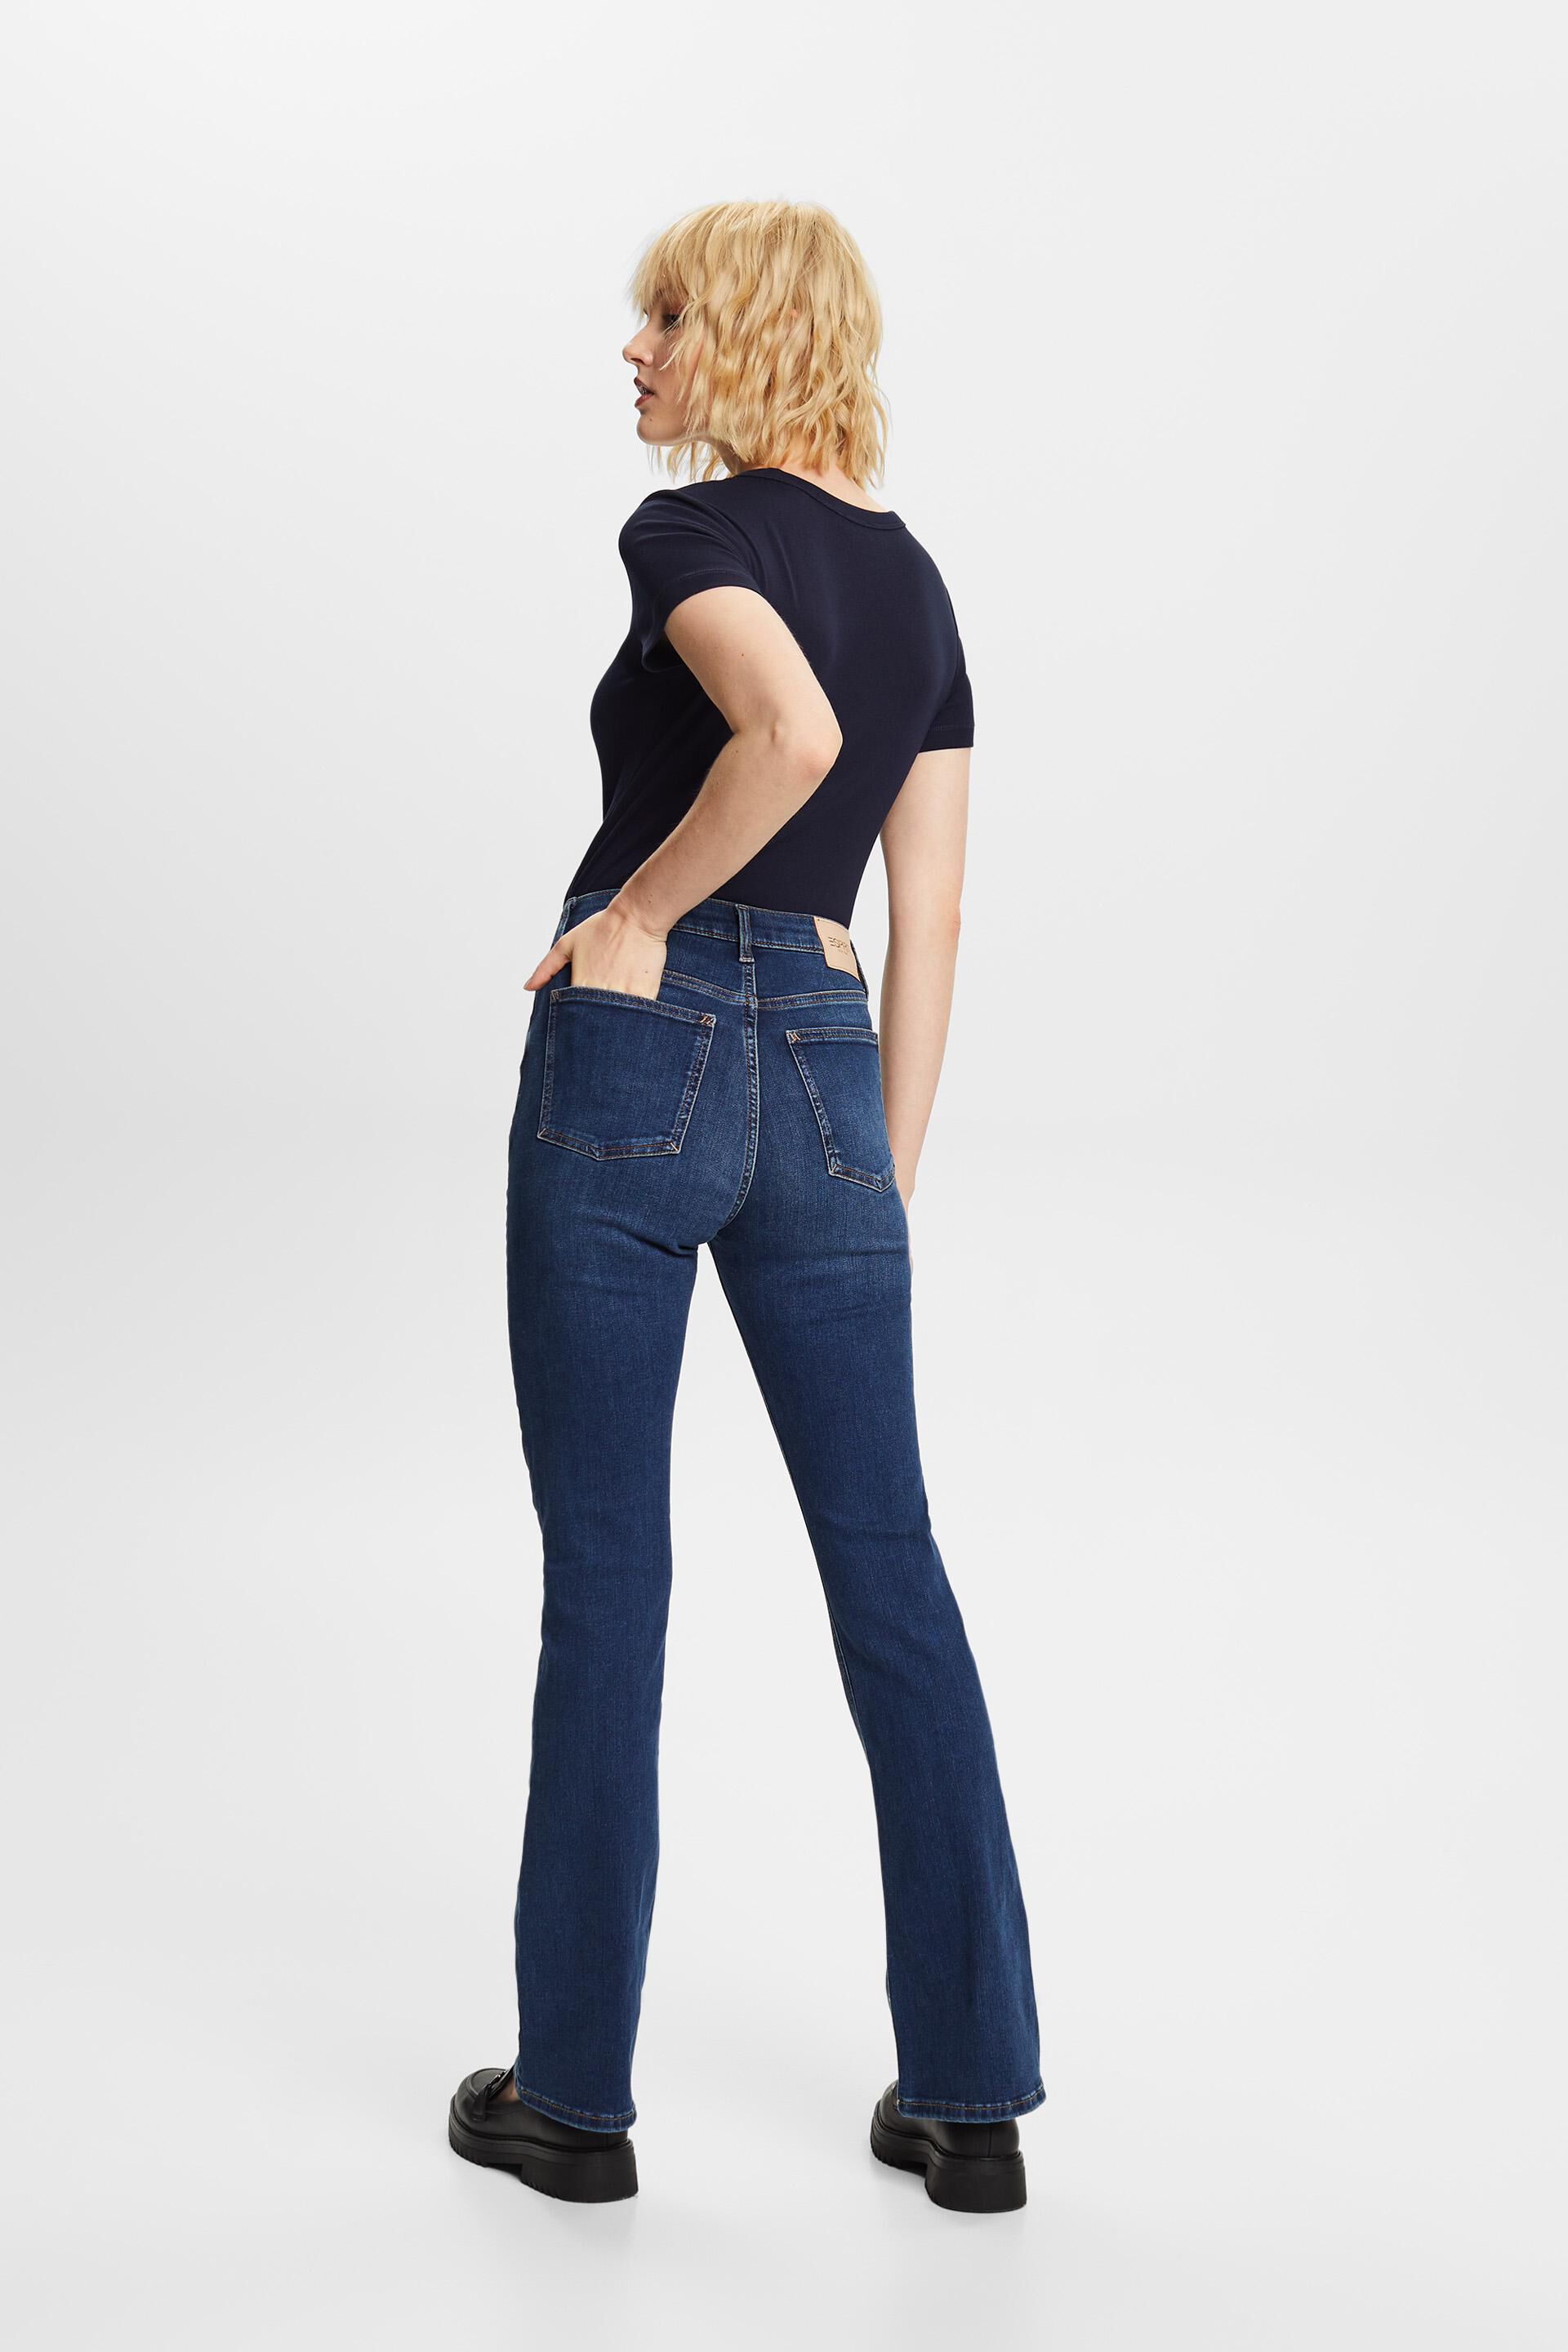 Esprit Damen Recycelt: Bootcut-Jeans Bund mit hohem